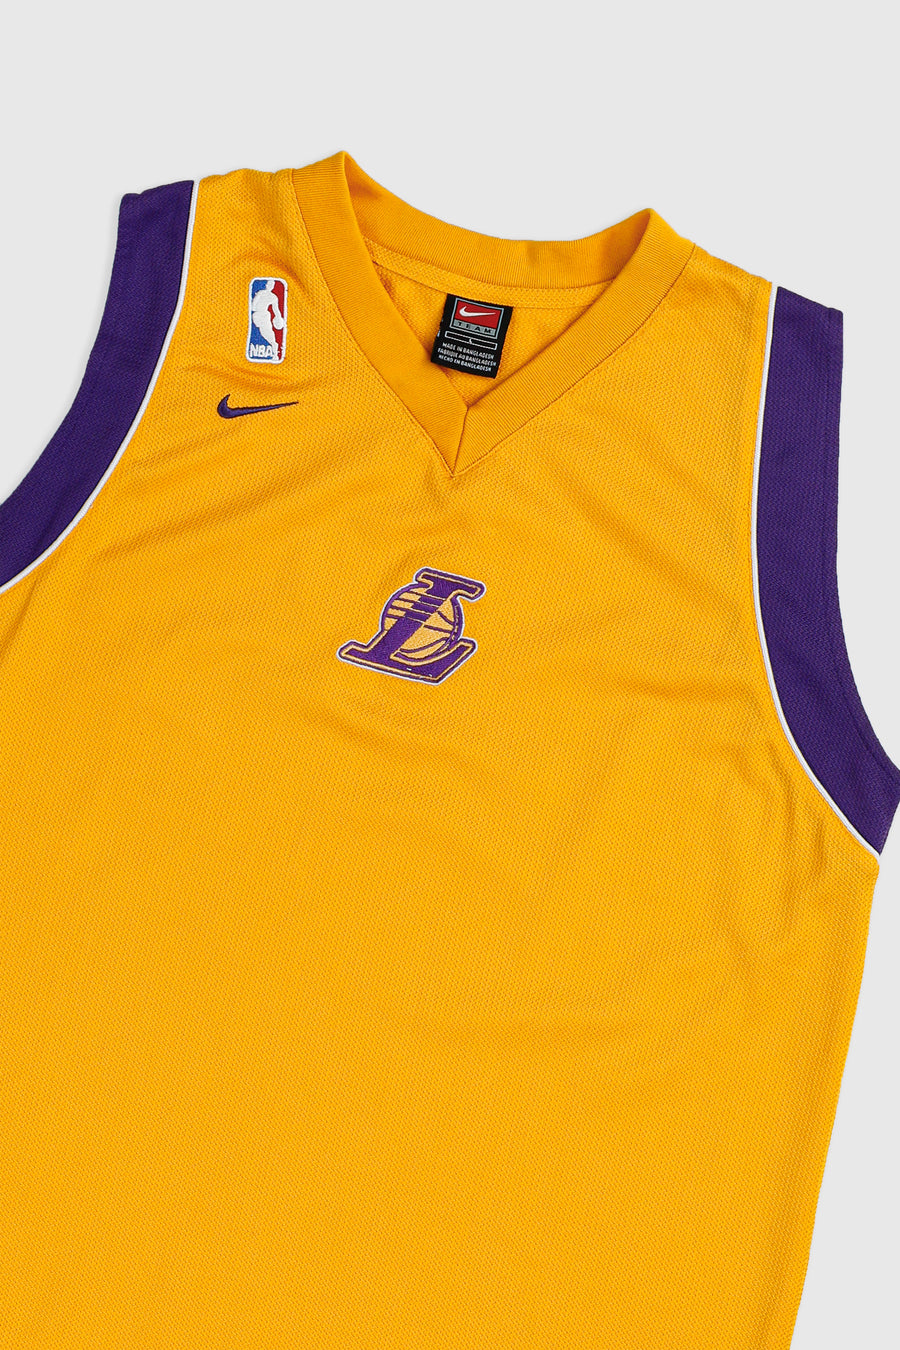 Vintage LA Lakers NBA Jersey - L